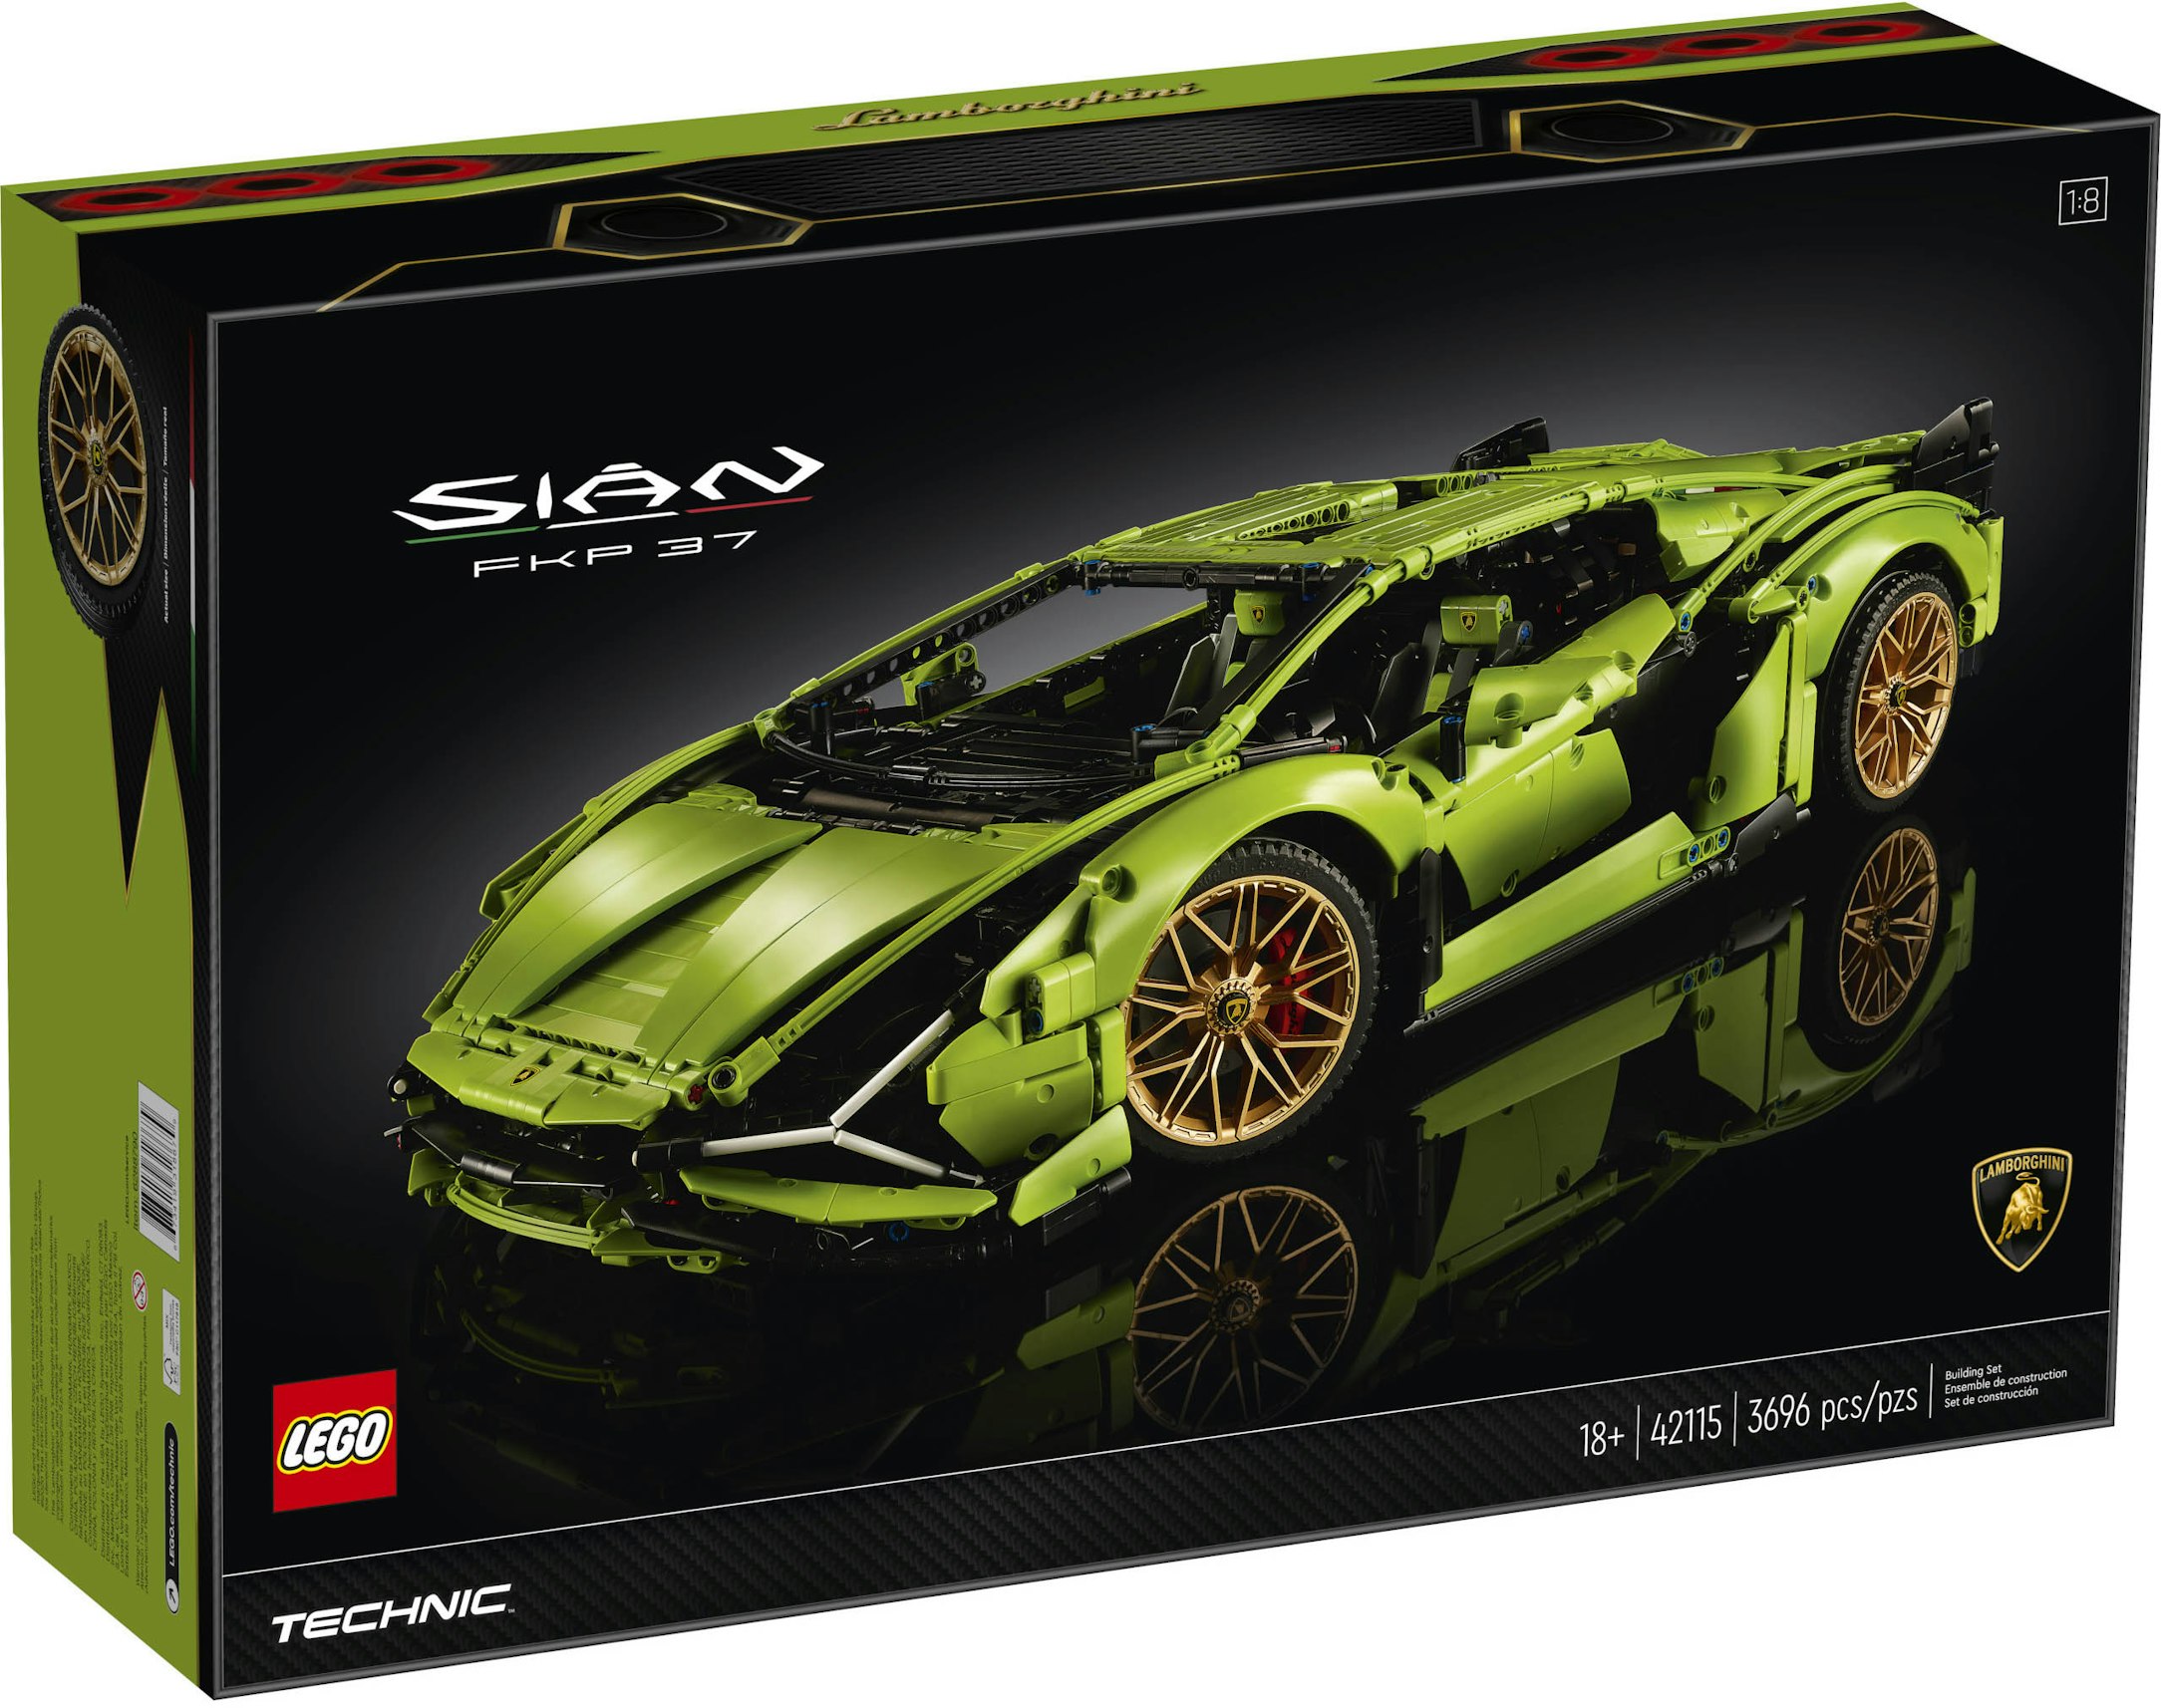 glas om forladelse spændende LEGO Technic Lamborghini Sian FKP 37 Set 42115 - US